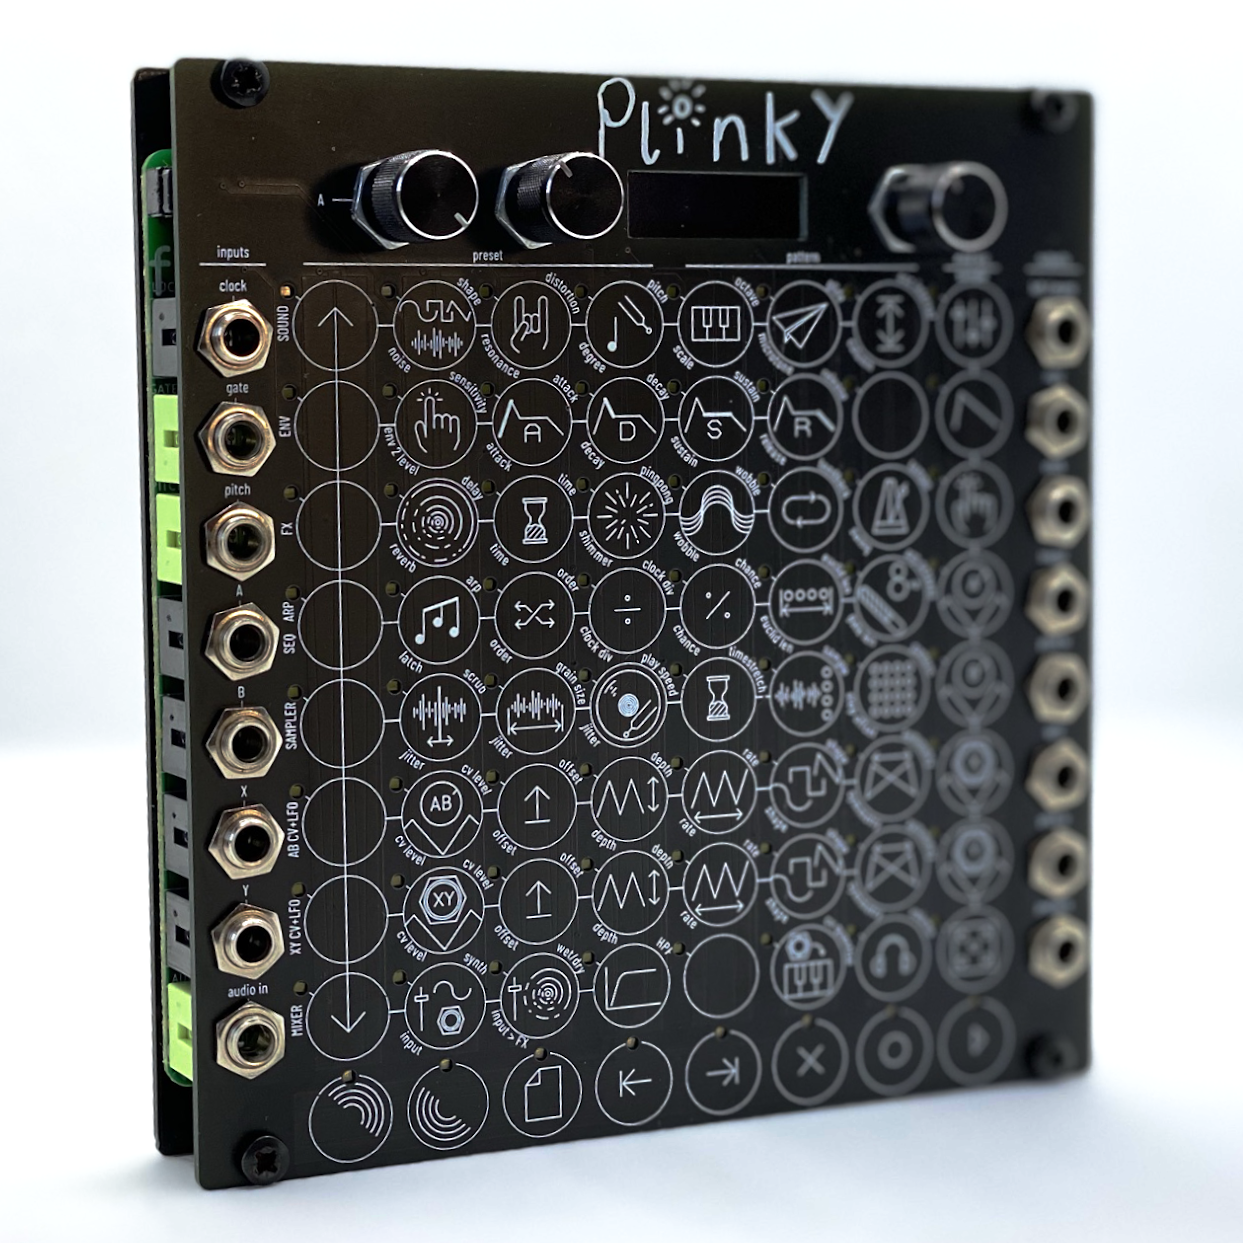 本体のみの出品ですPlinky synth タッチ式高機能シンセサイザー ユーロ